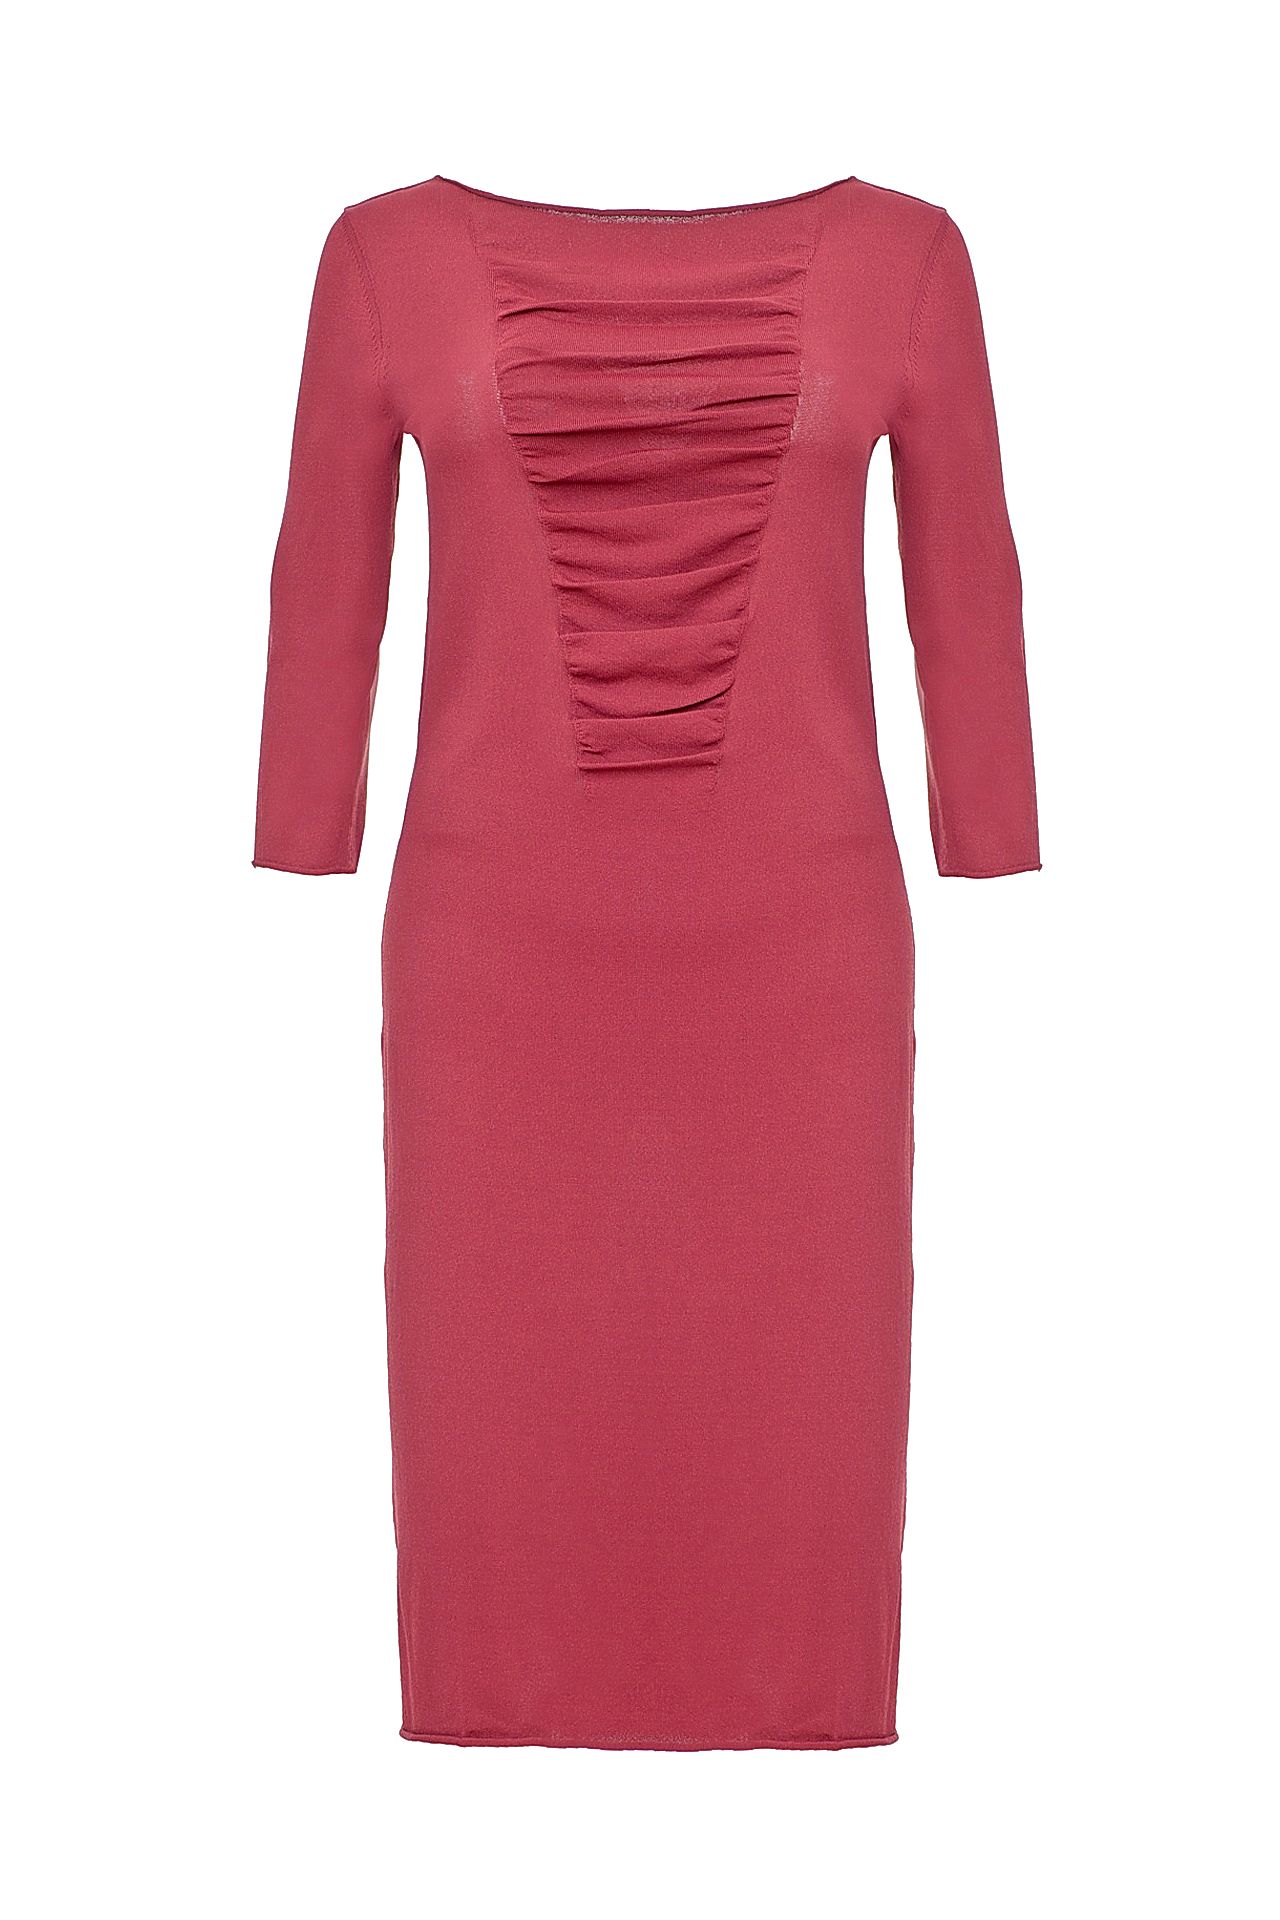 Одежда женская Платье LIVIANA CONTI (F4EA18/14.2). Купить за 8750 руб.